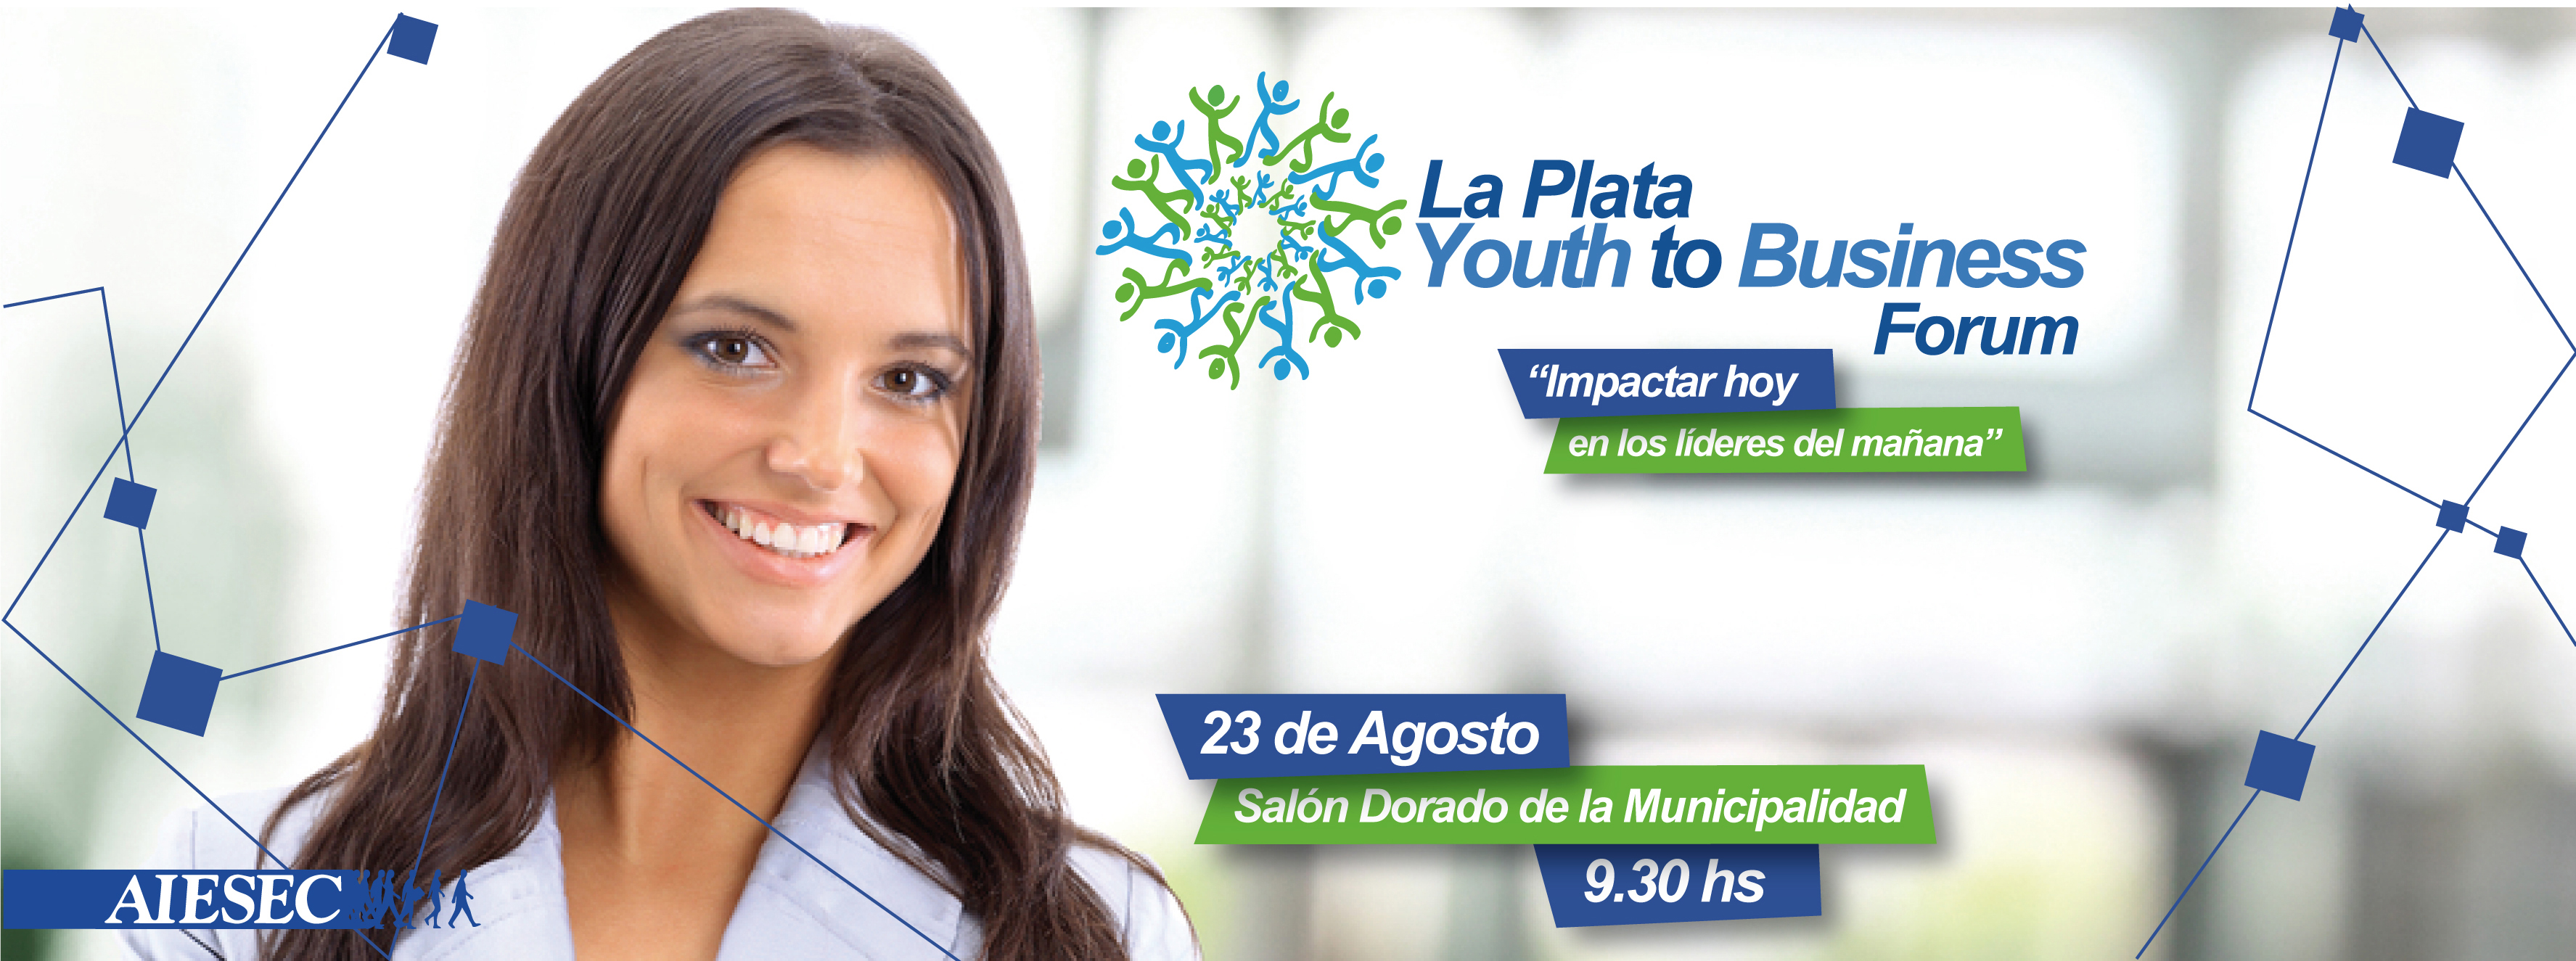 Seminario de emprendedurismo y liderazgo joven de Aiesec La Plata